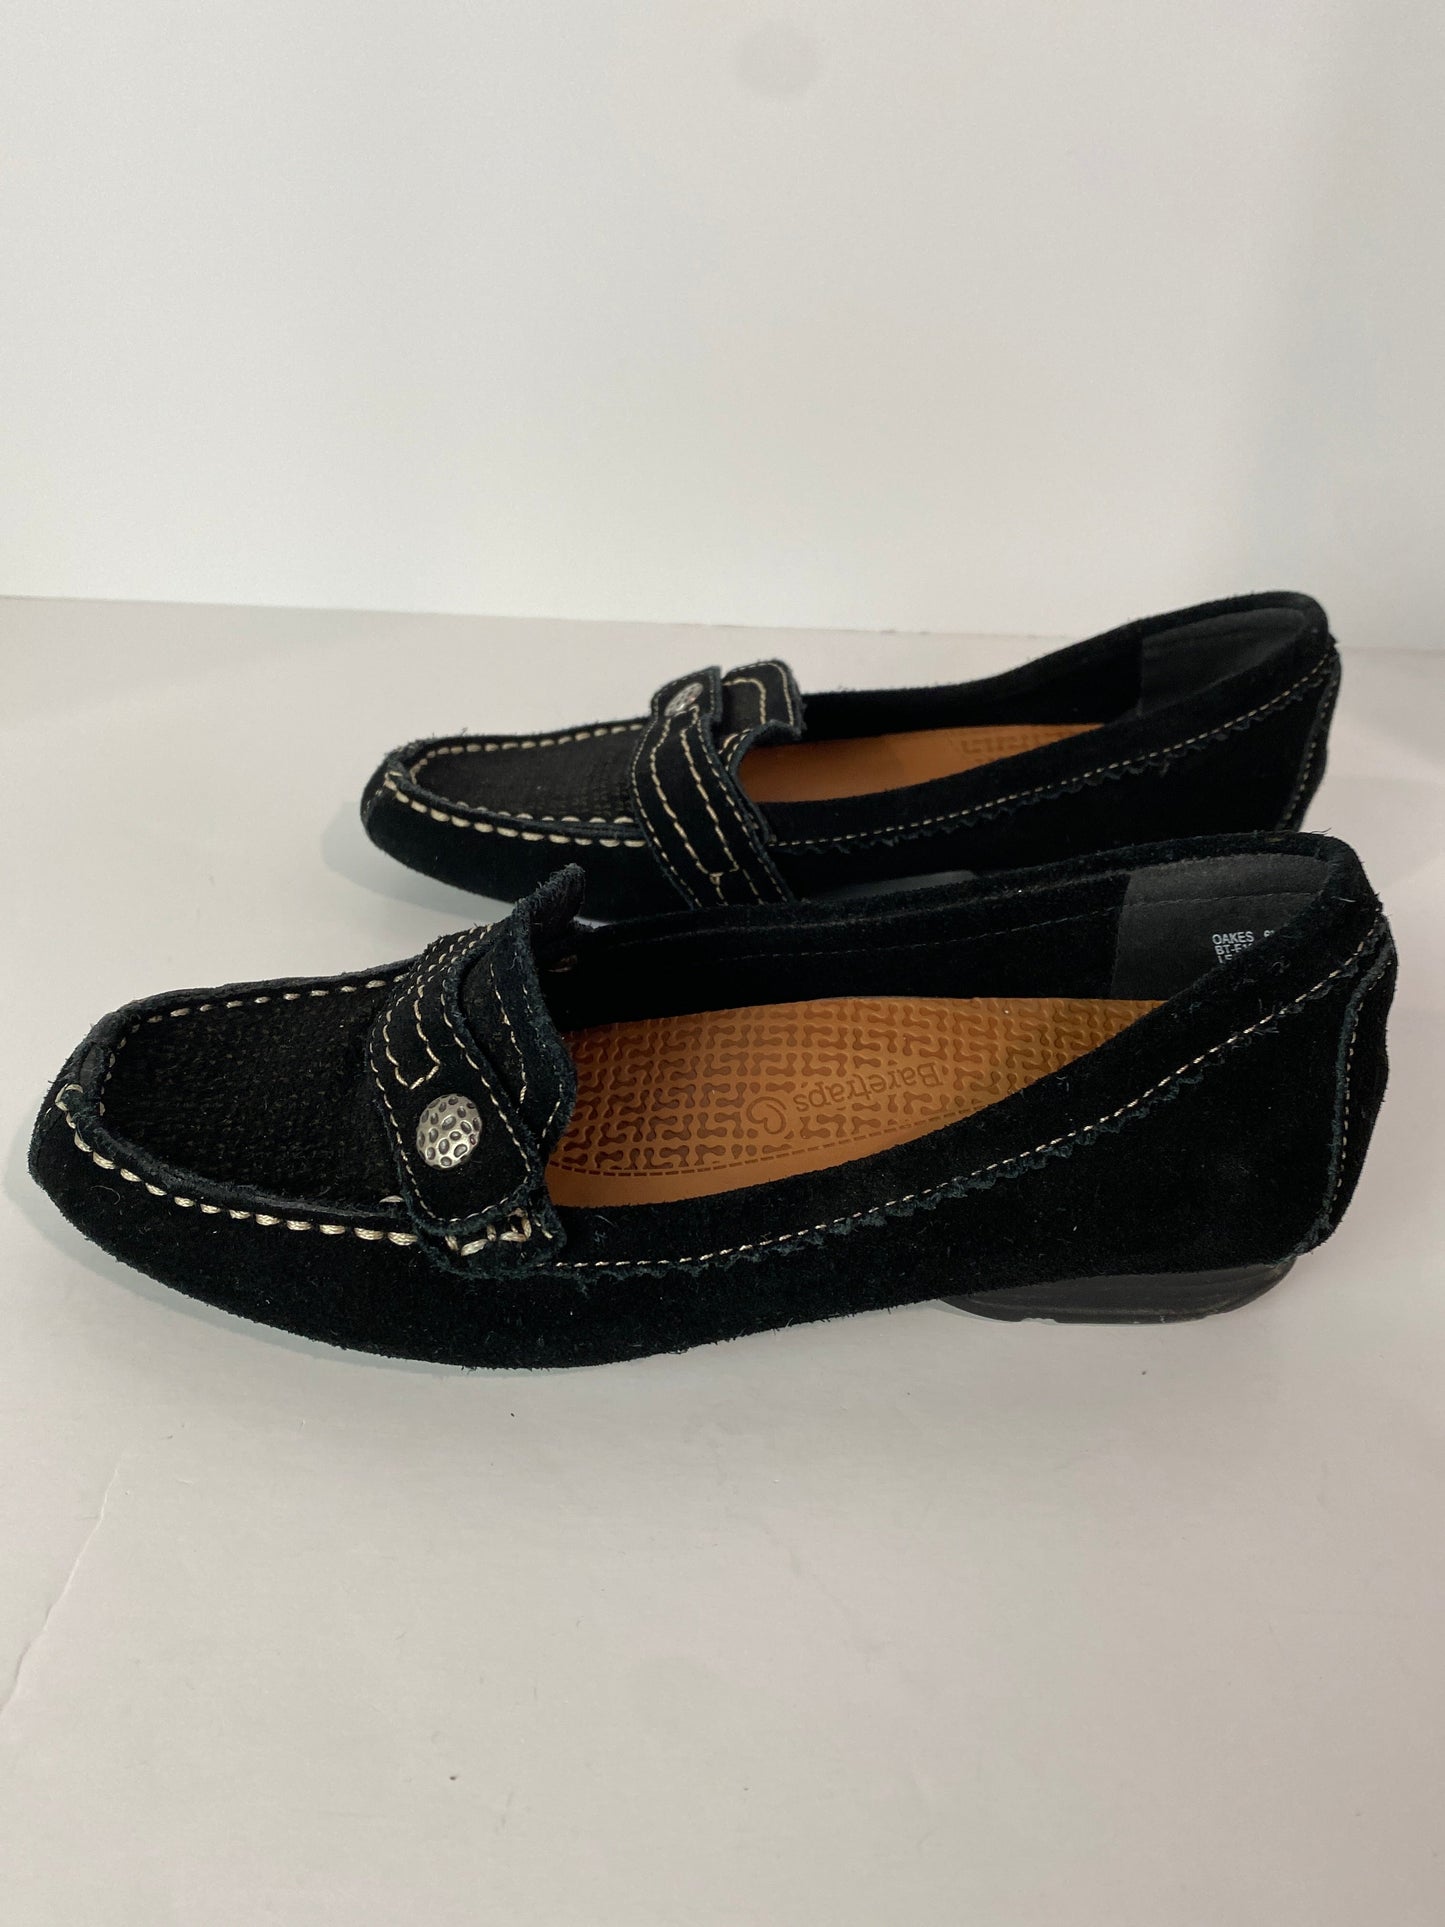 Black Shoes Flats Bare Traps, Size 6